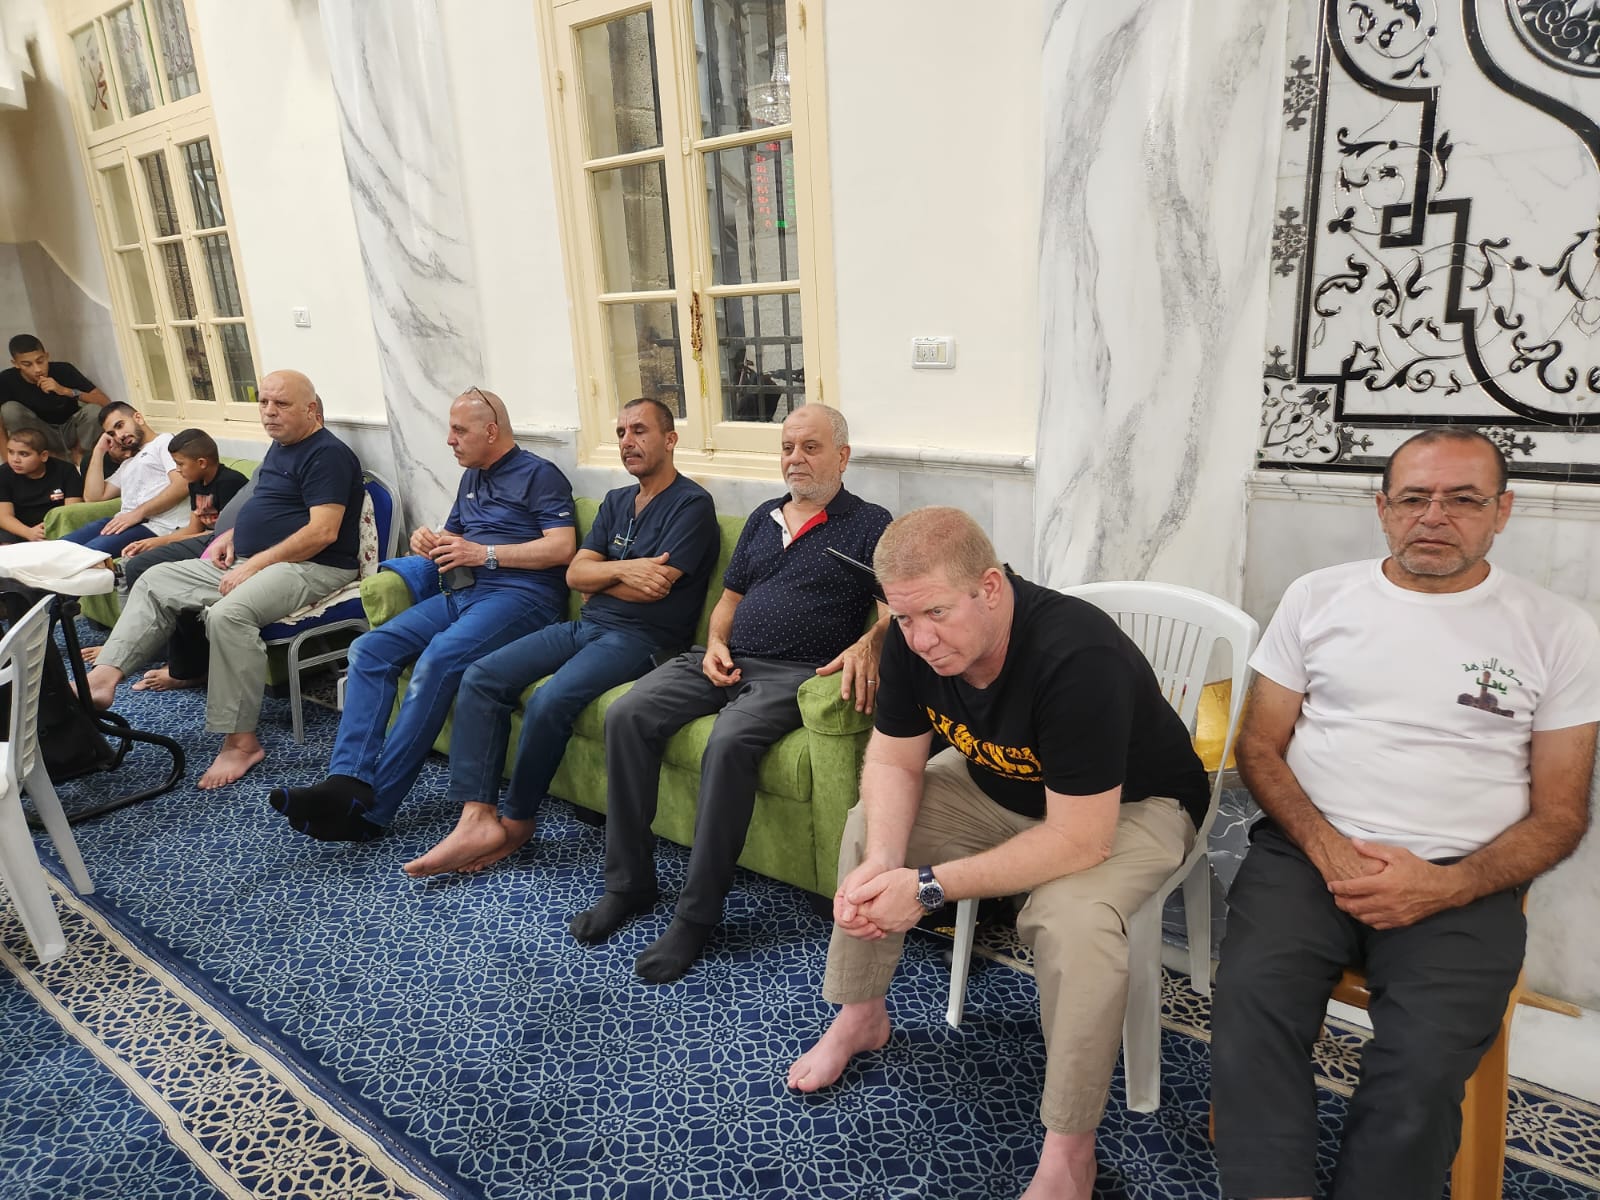 يافا: بالصور الأمسية الإيمانية الأسبوعية في مسجد النزهة 